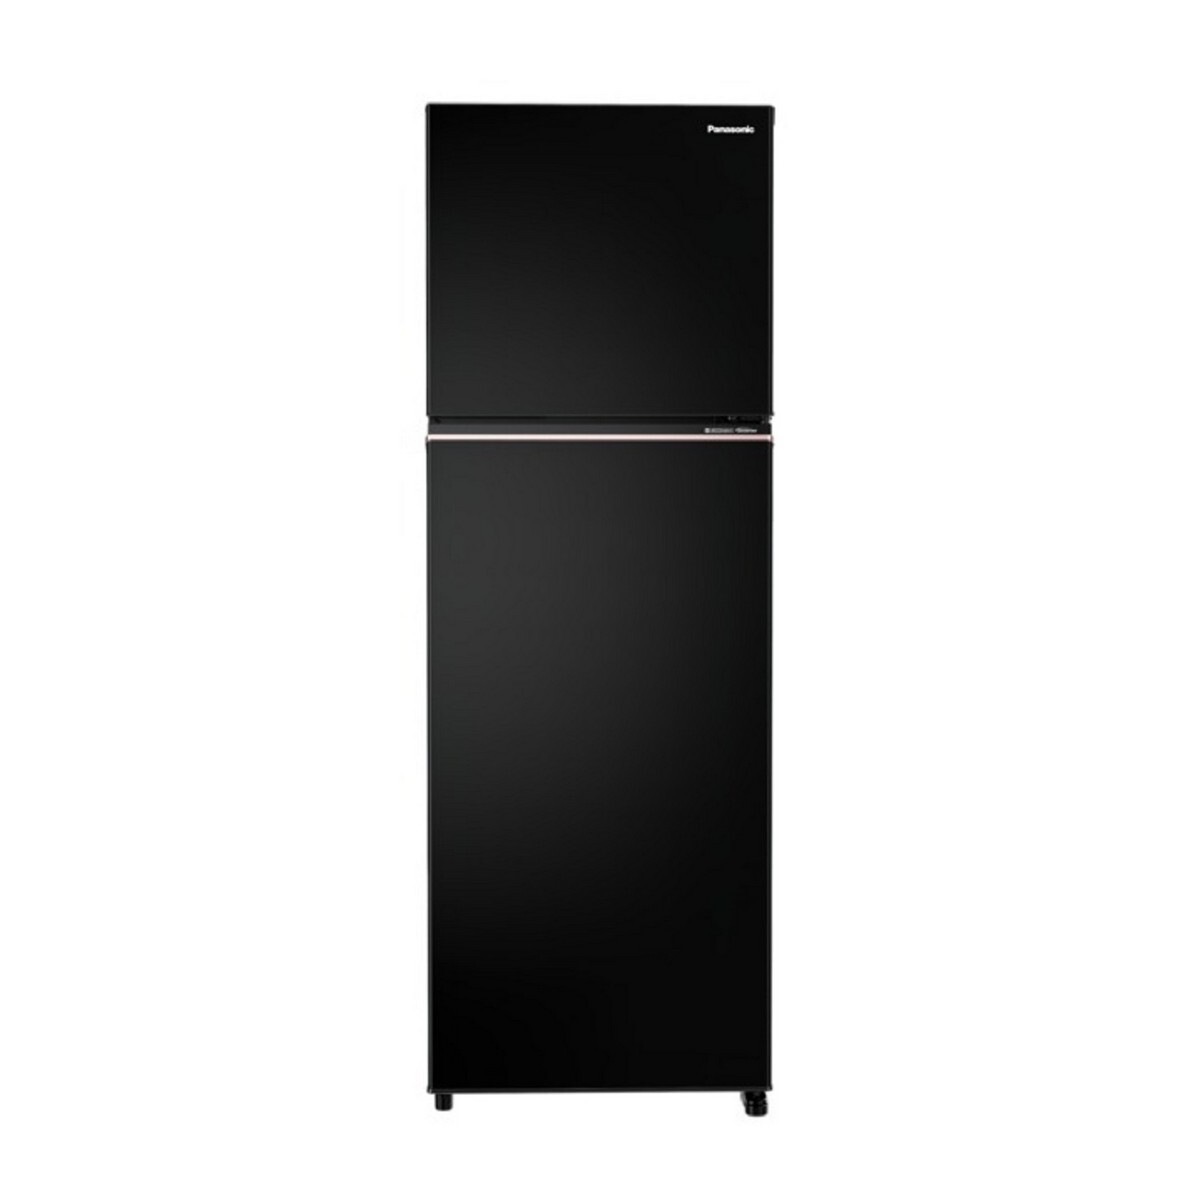 Panasonic Double Door Frost Free Refrigerator TG328CPKN 275L